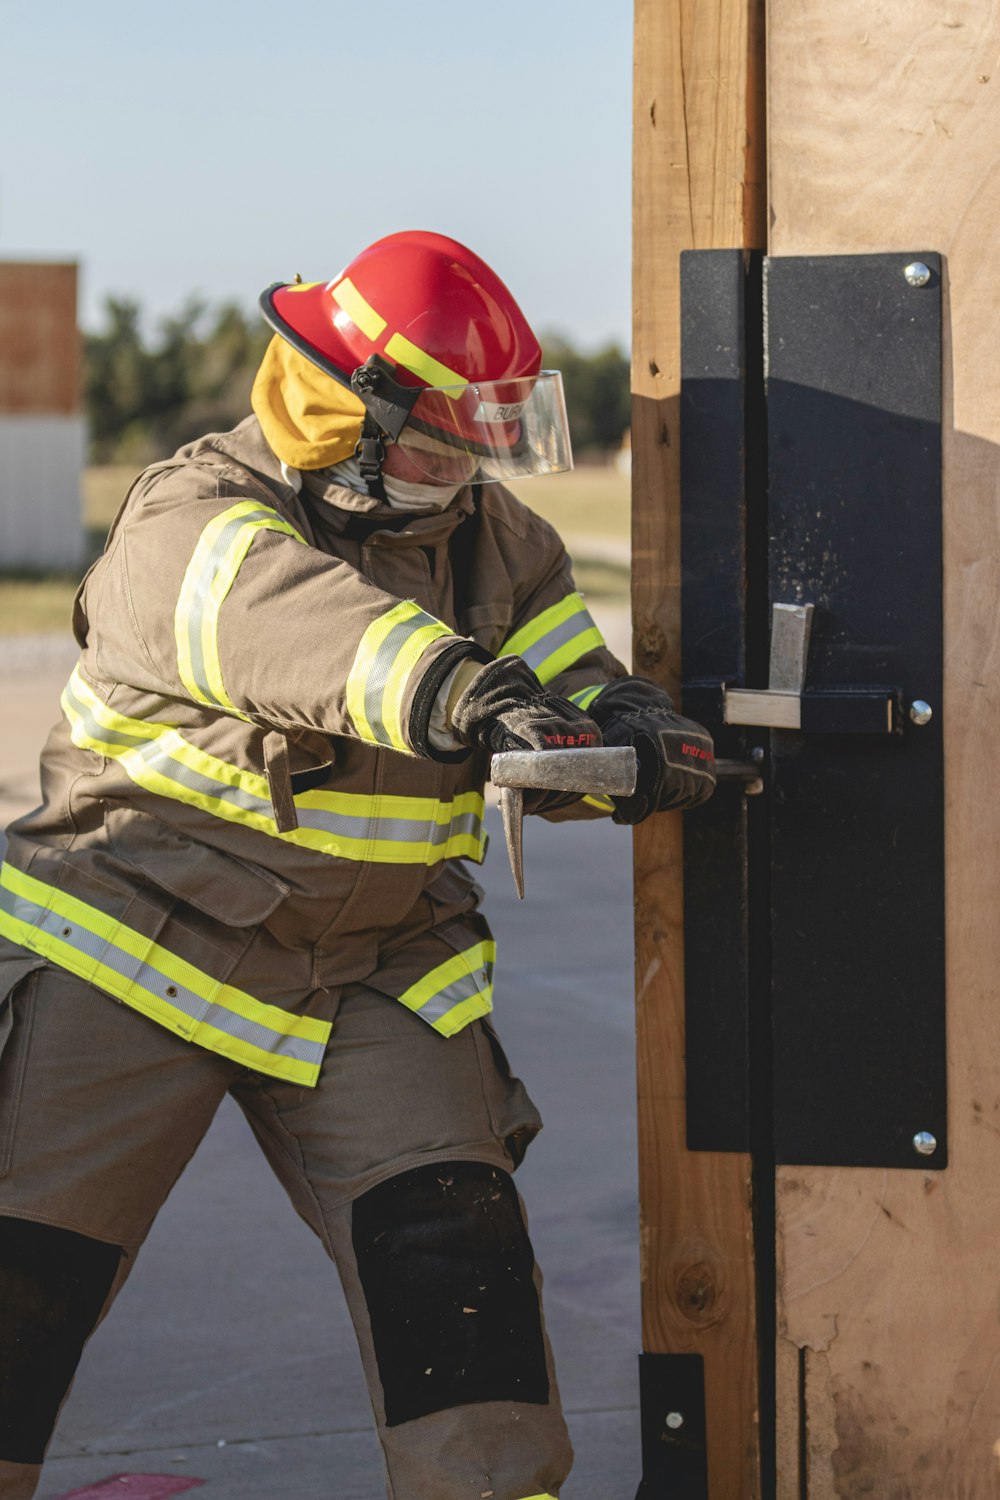 a fireman in full gear is opening a door